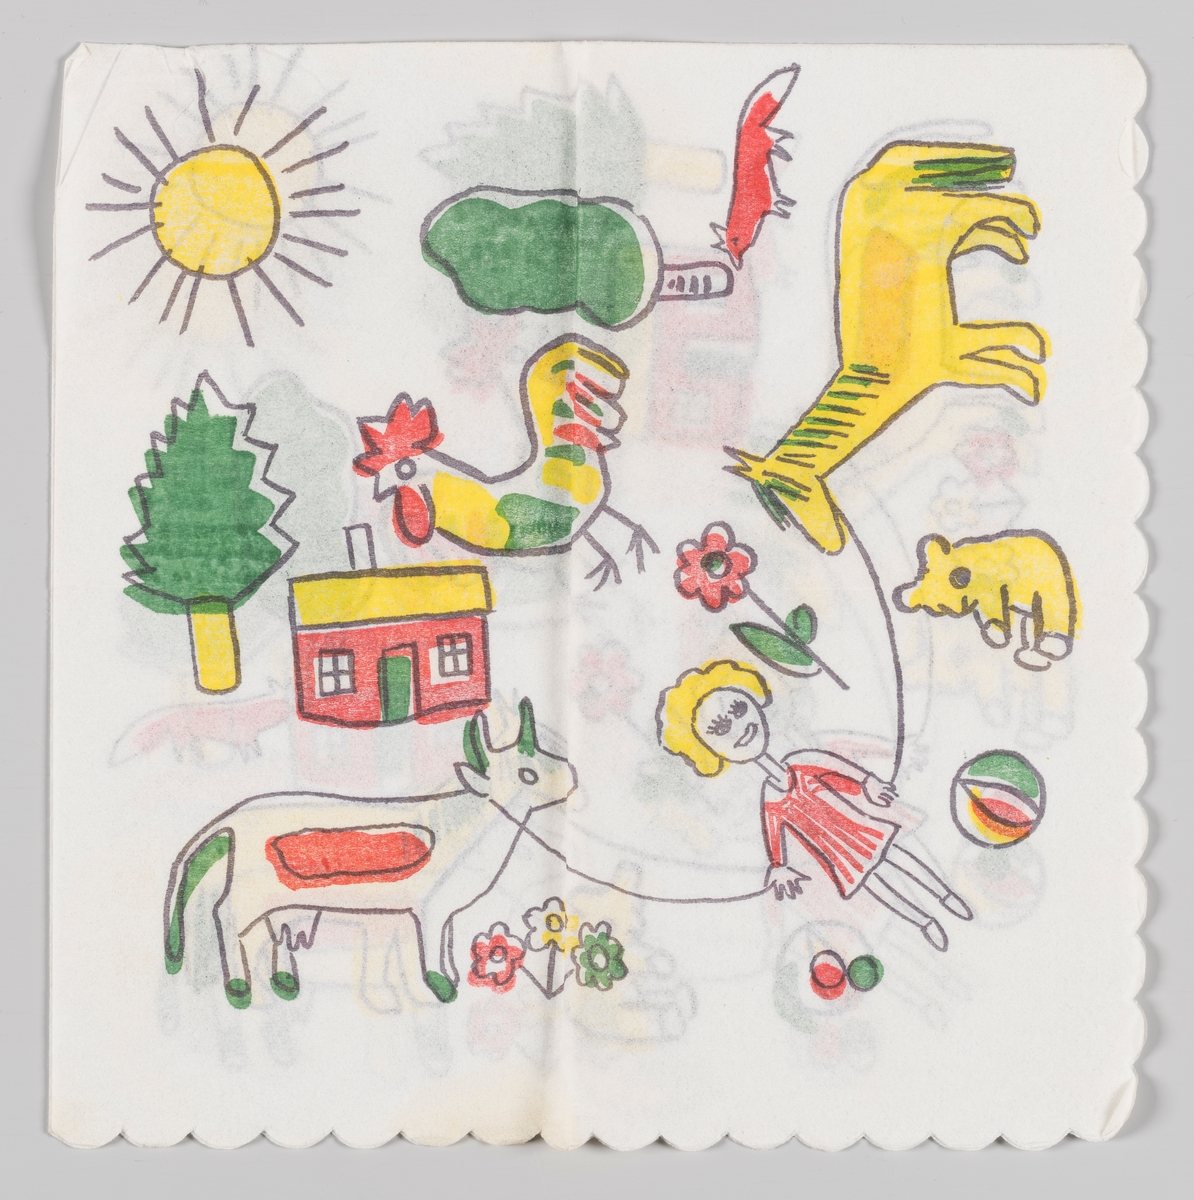 En jente hopper i hoppetau mellom en ku og en hest omgitt av en bamse, baller, blomster, en hane, et hus, en rev, trær og en strålende sol.